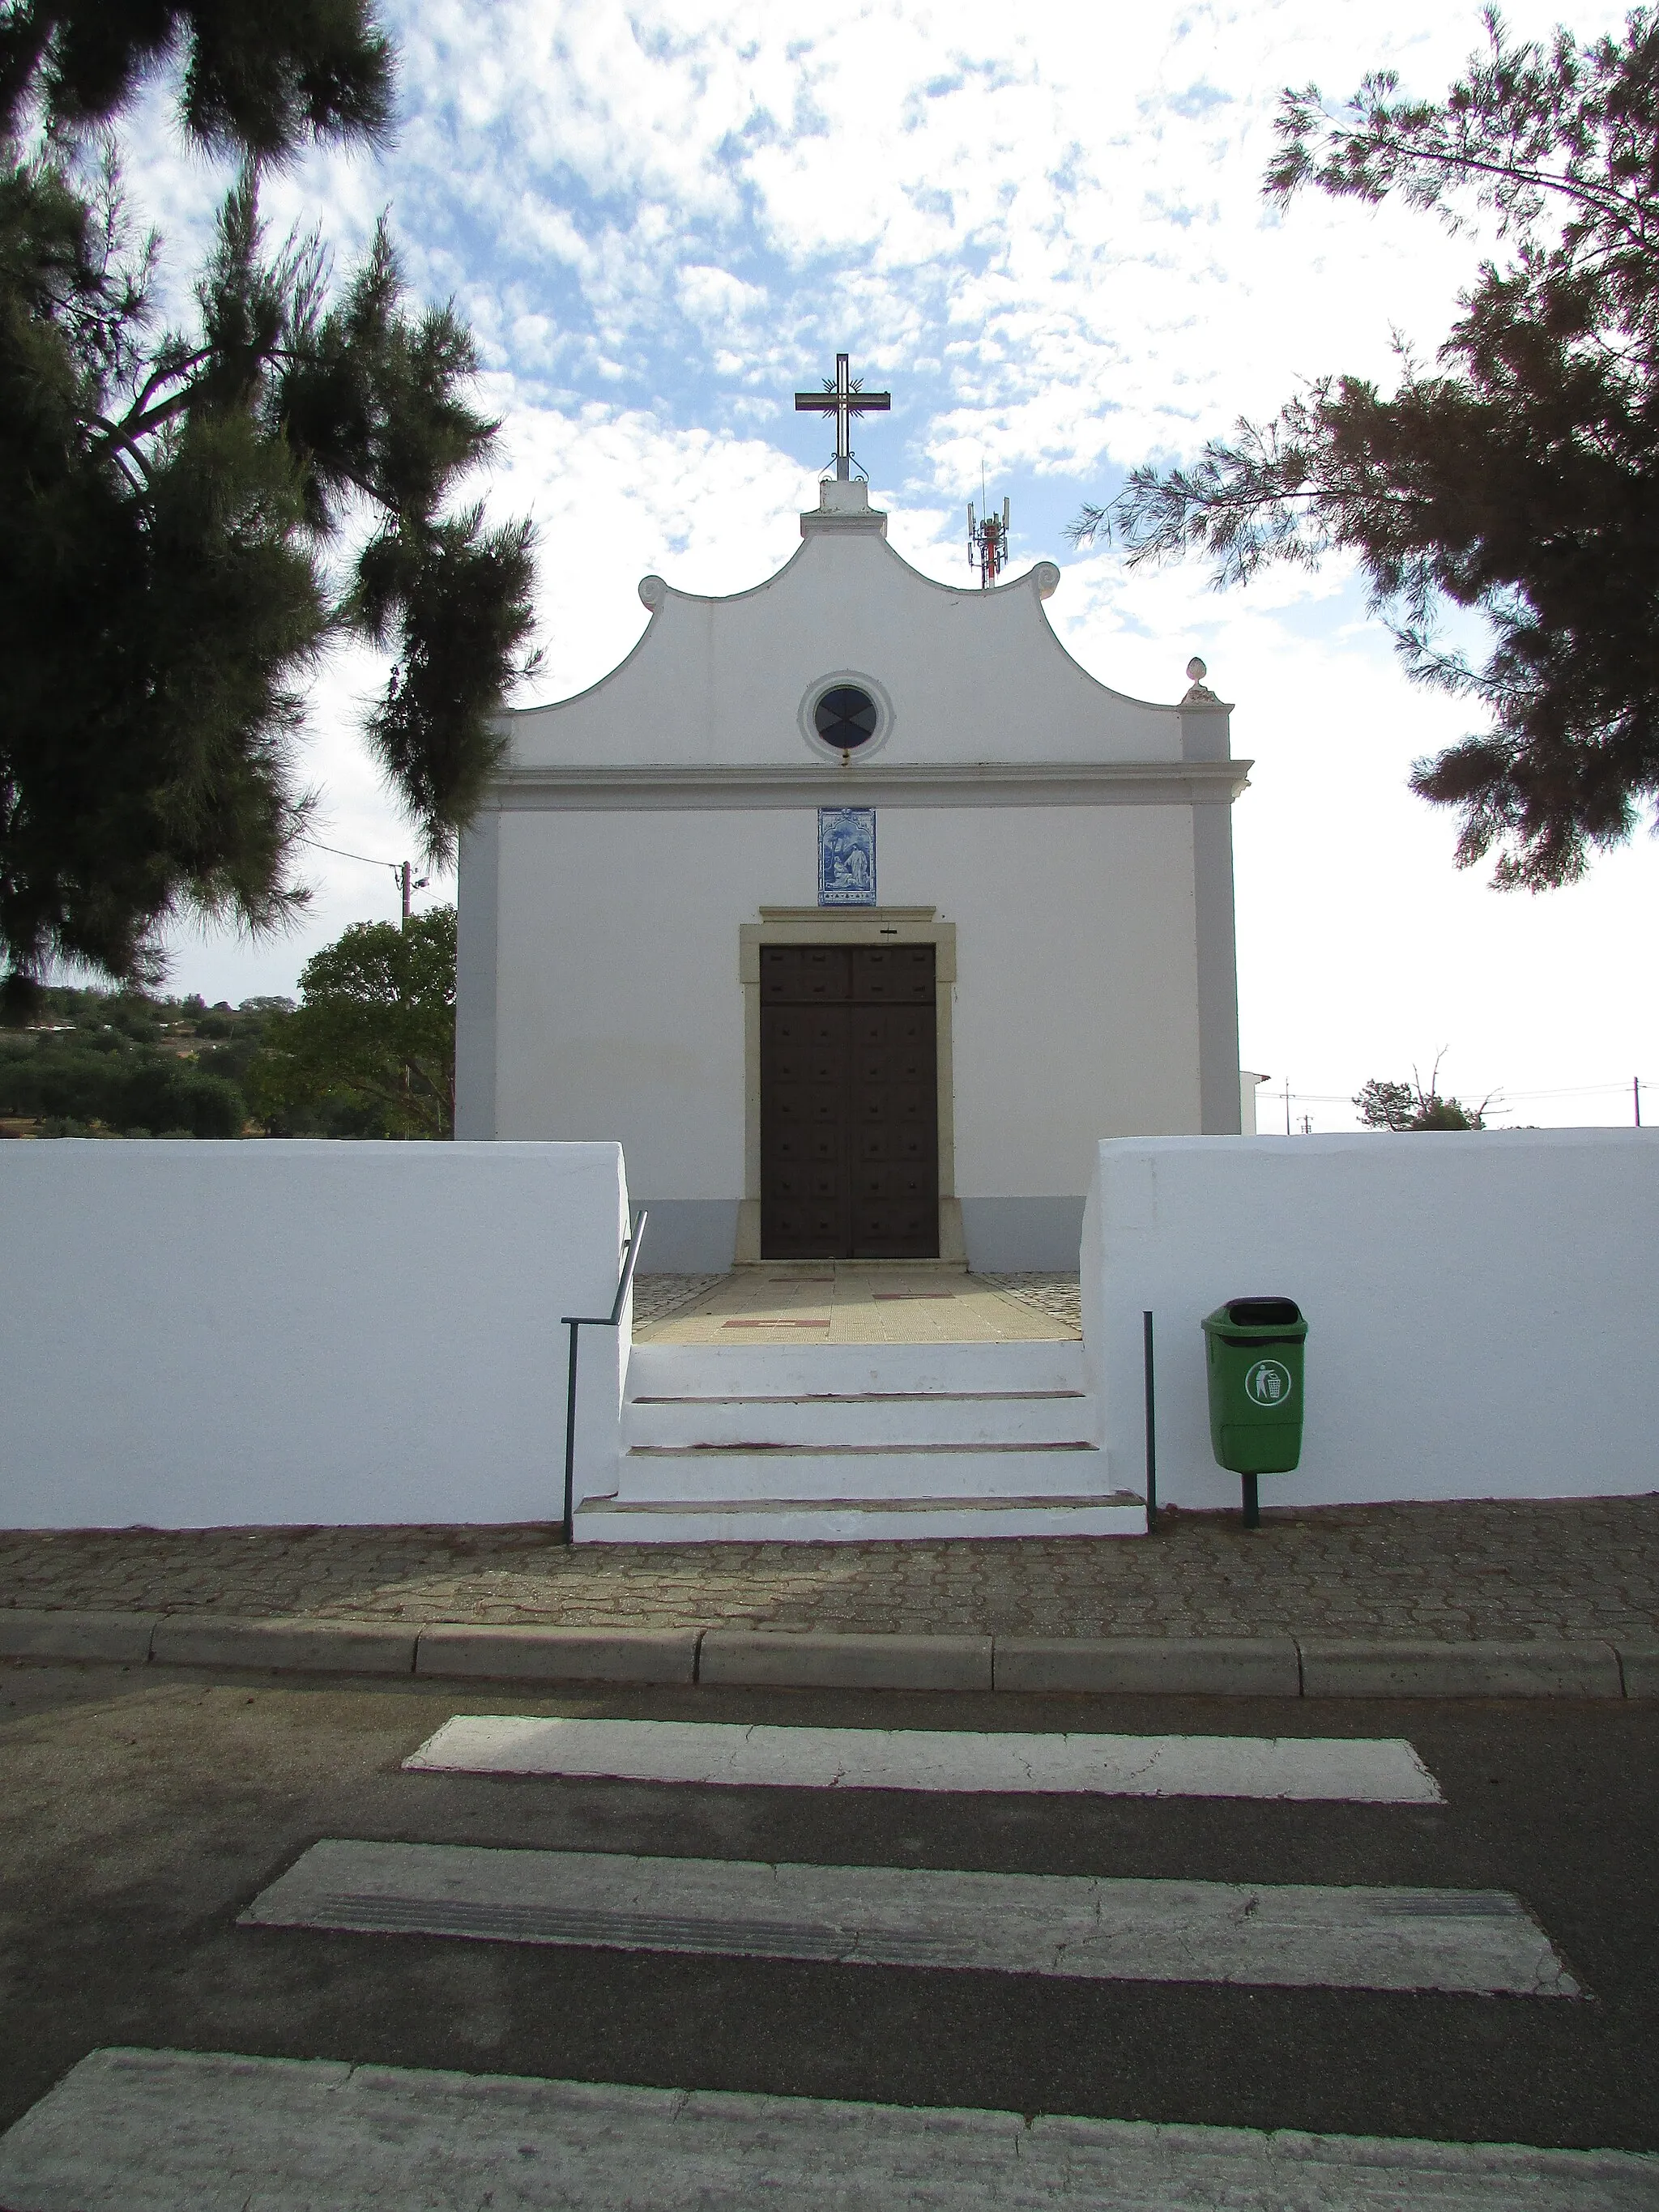 Image de Algarve